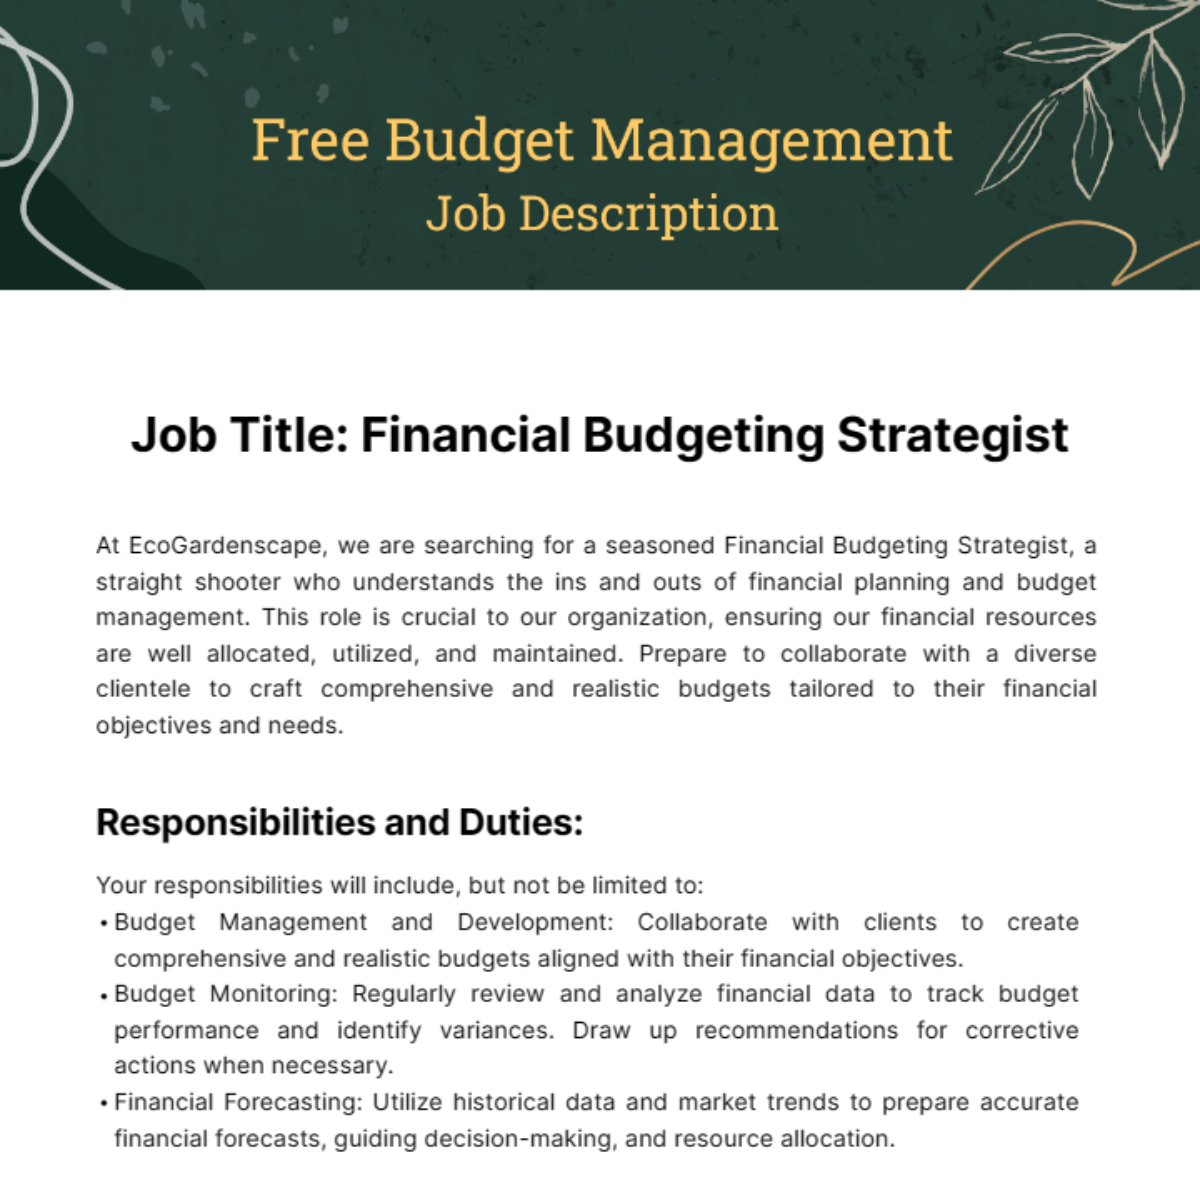 Free Budget Management Job Description Template